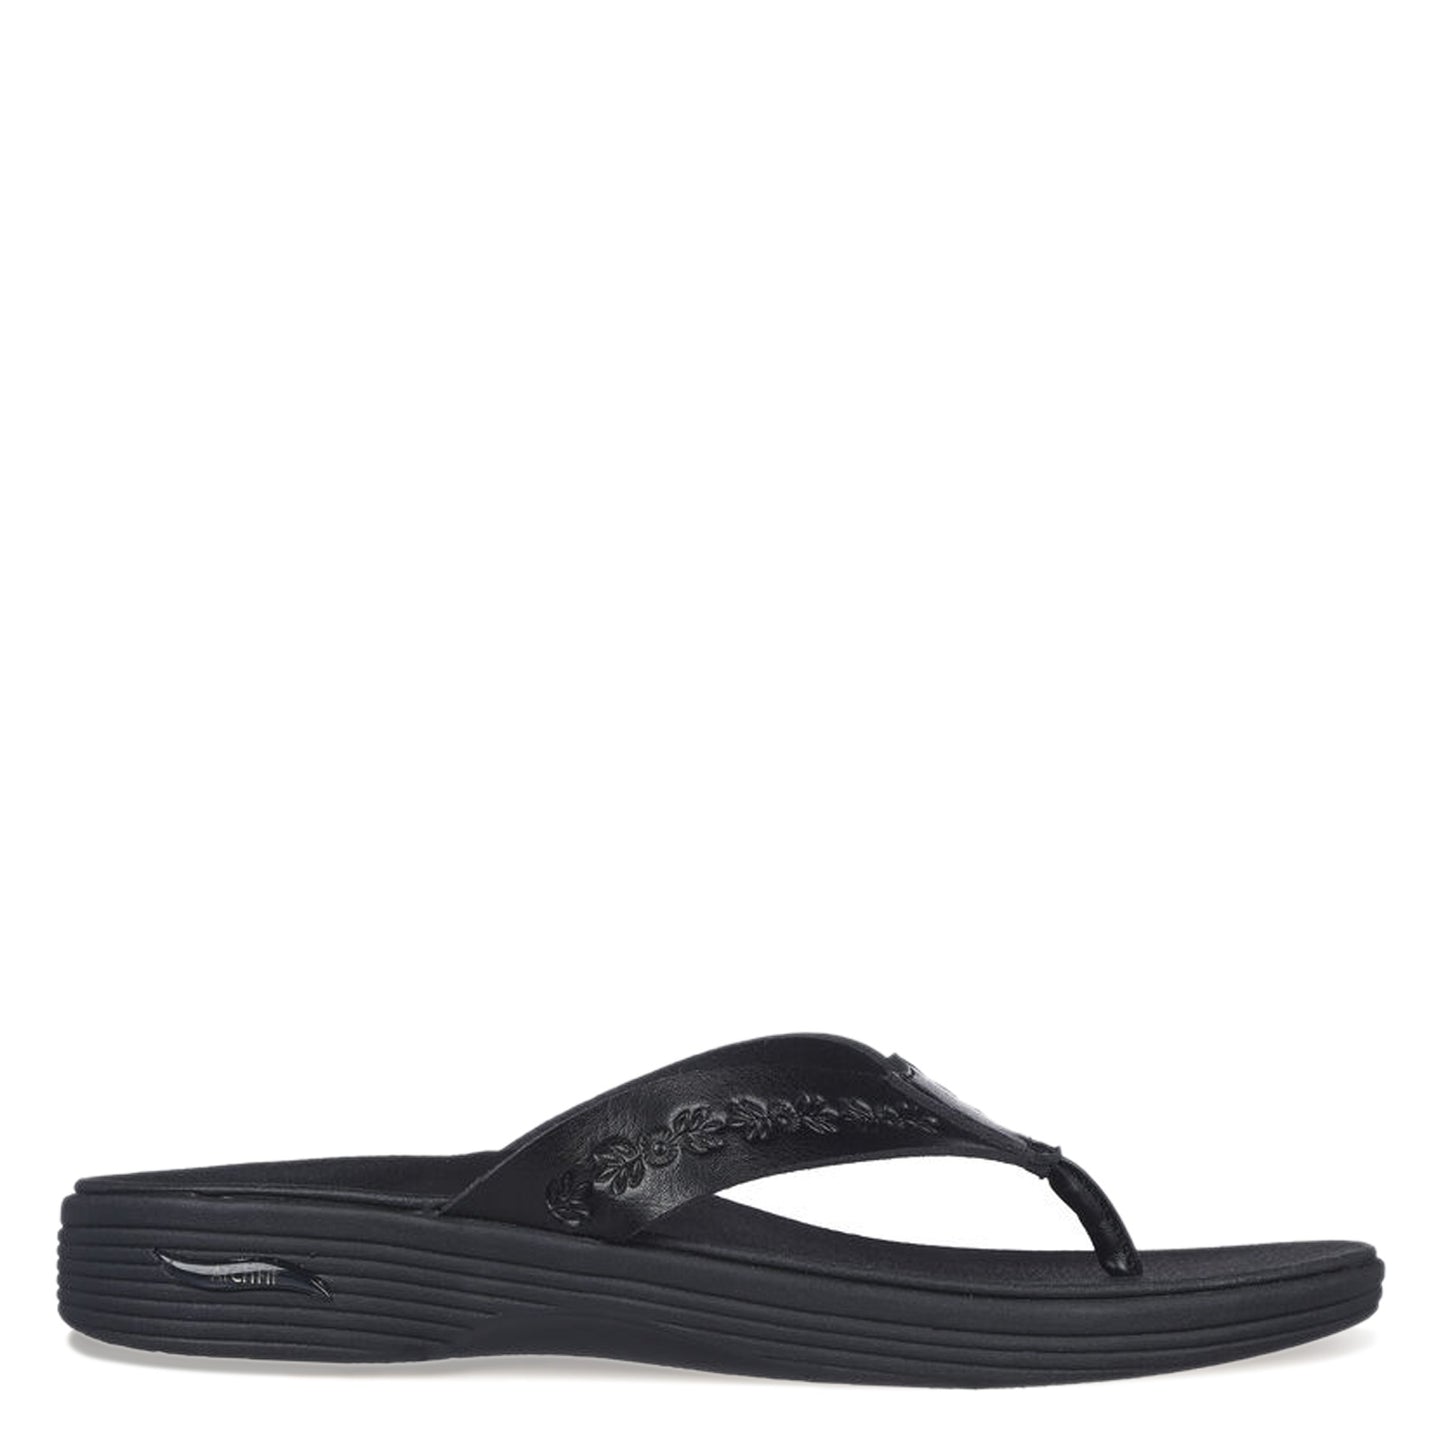 Peltz Shoes  Women's Skechers Arch Fit Maui - Island Hopper Sandal BLACK 163370-BLK